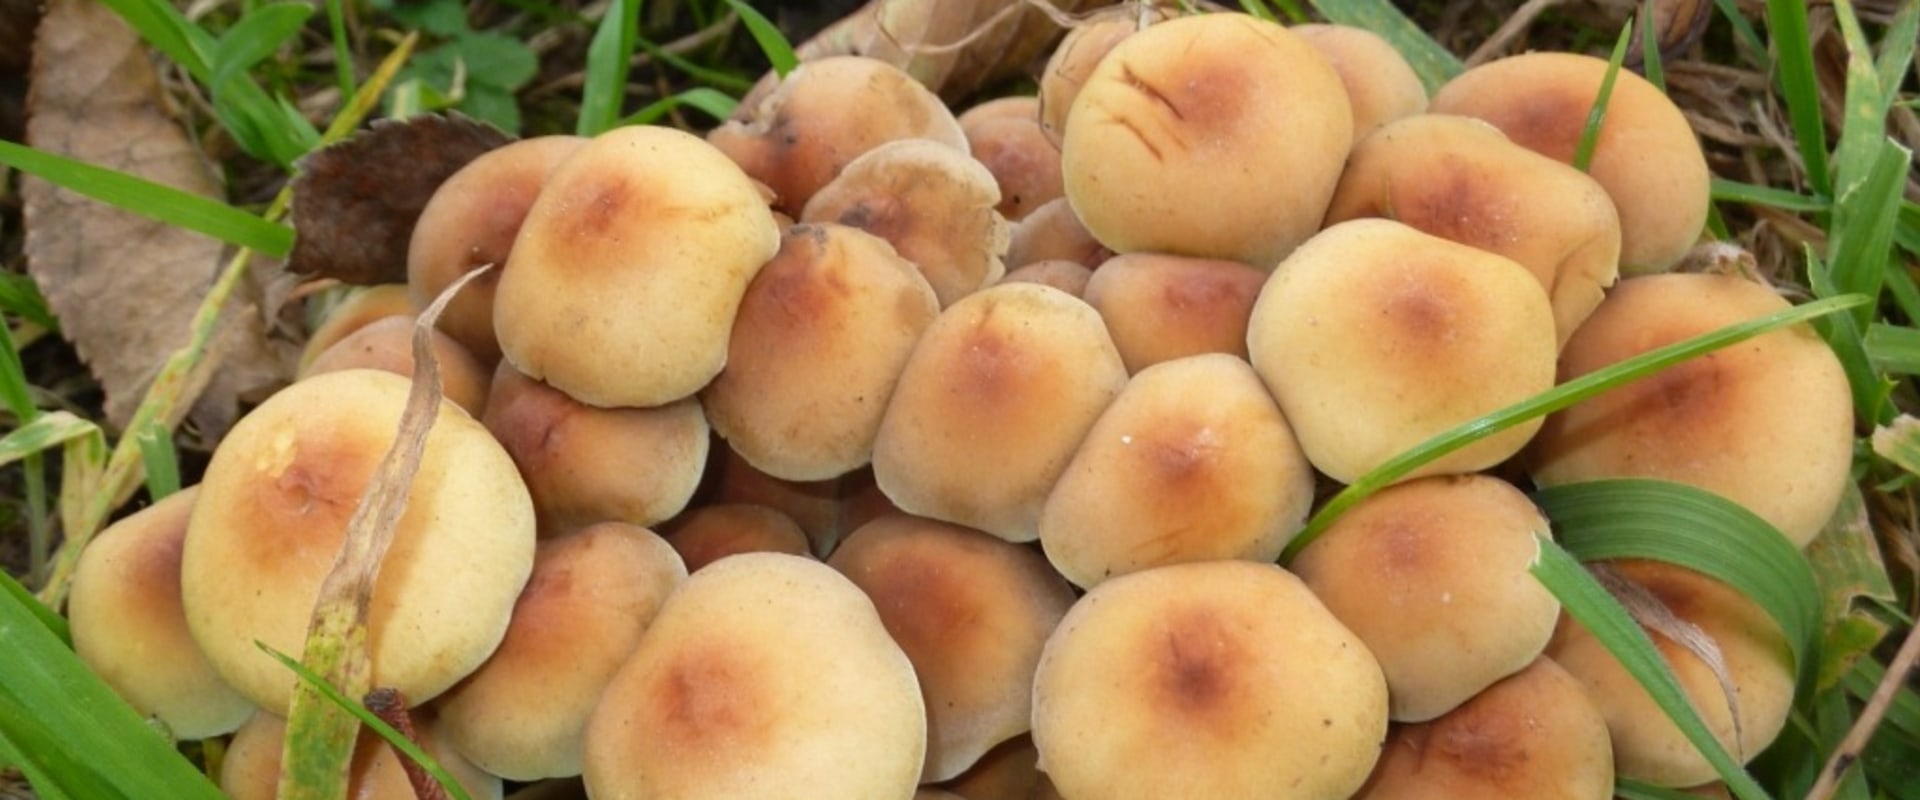 Zijn paddenstoelen in de achtertuin?